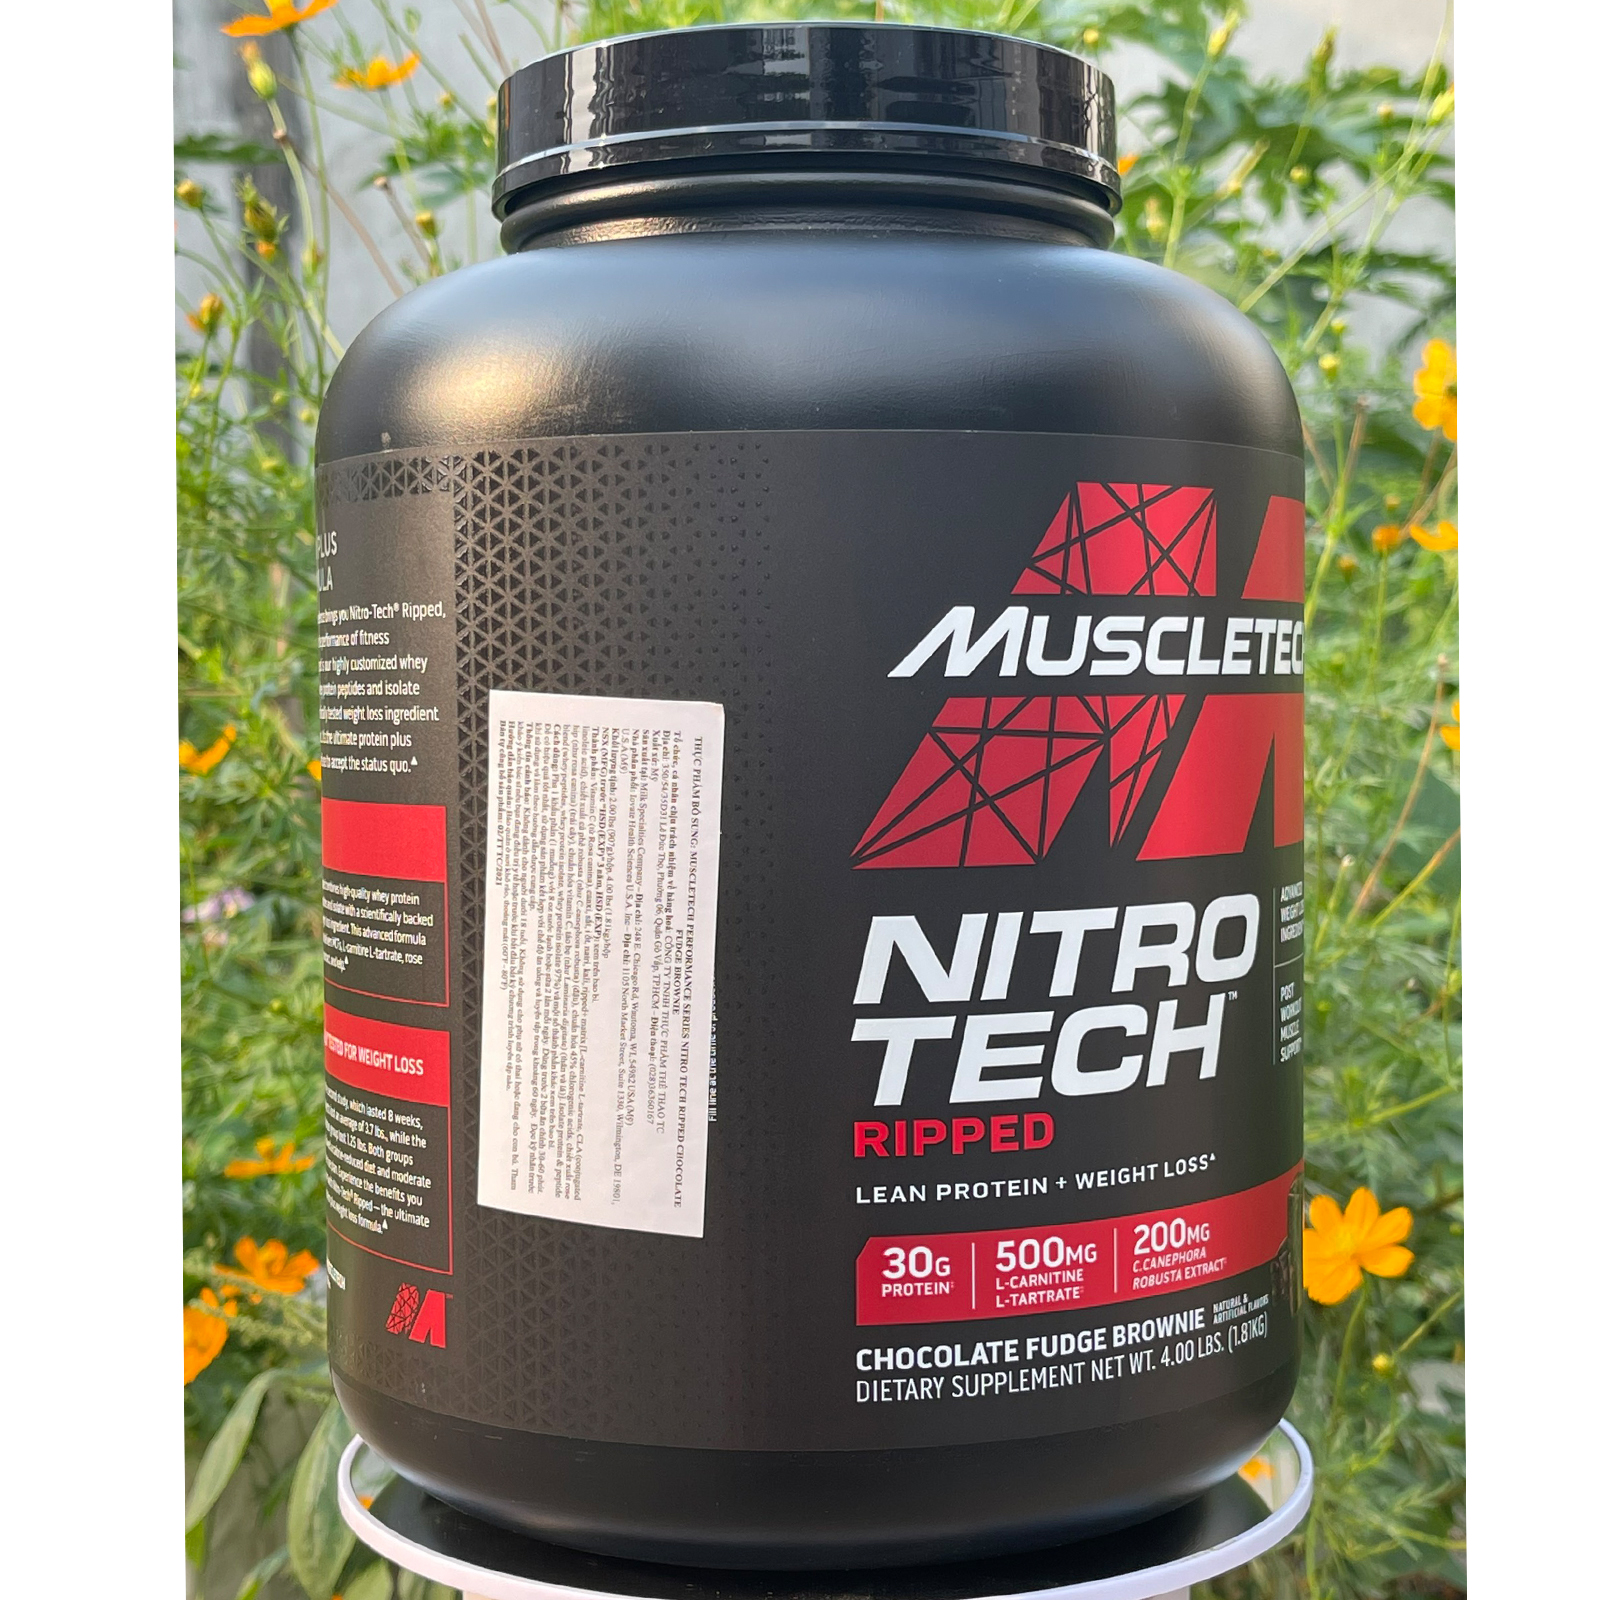 Sữa tăng cơ whey protein nitro tech ripped của muscle tech hộp 42 lần dùng - ảnh sản phẩm 6